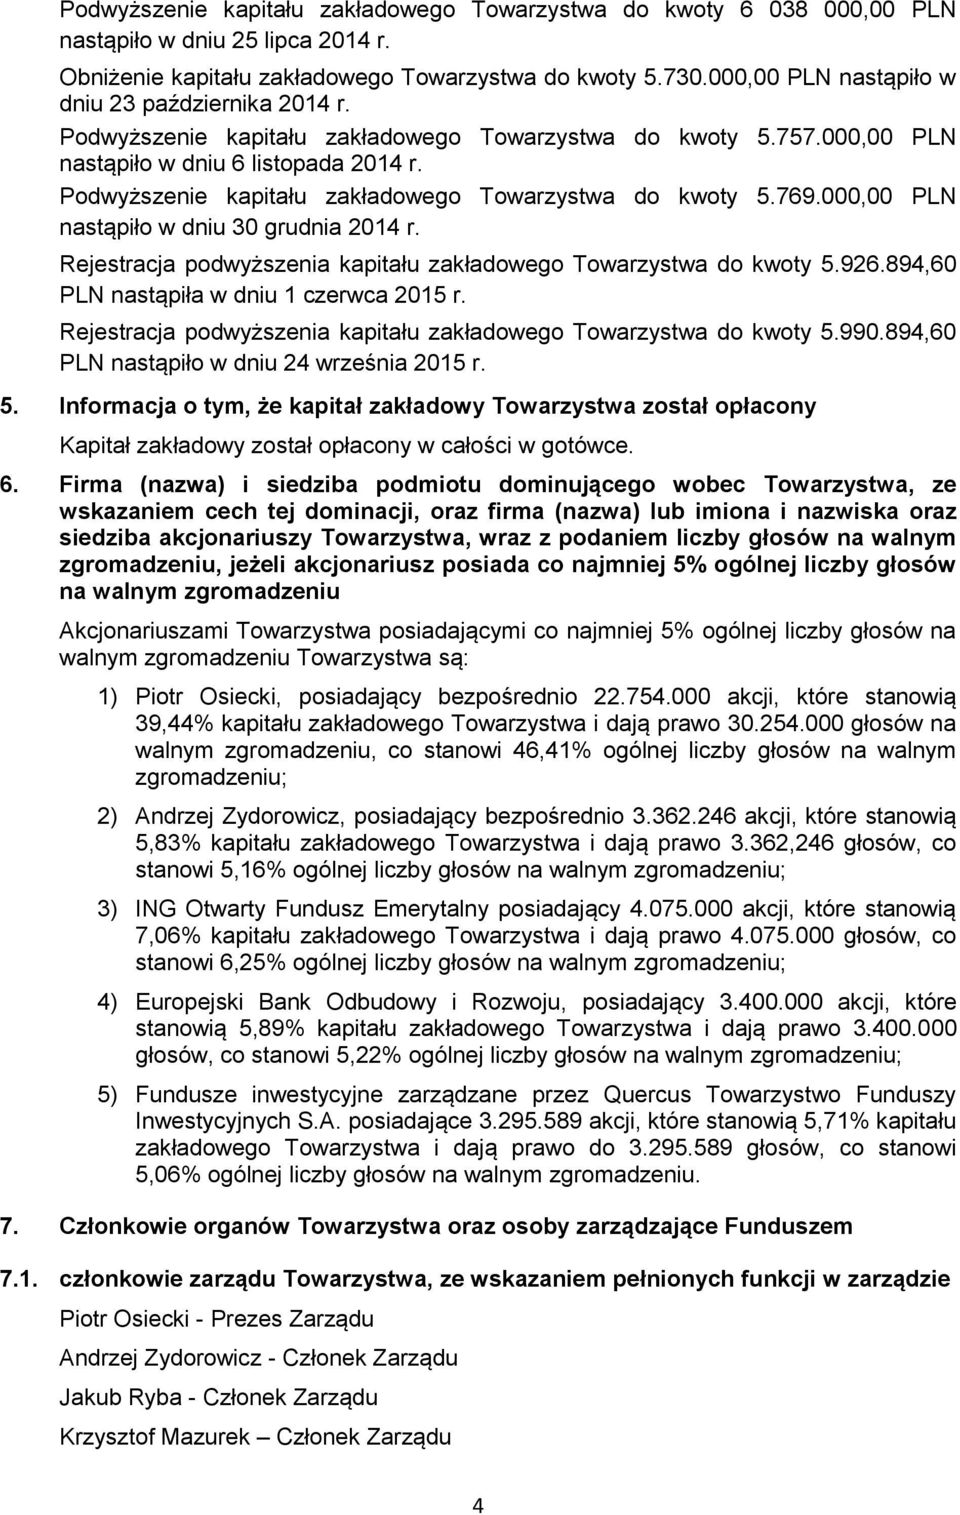 Podwyższenie kapitału zakładowego Towarzystwa do kwoty 5.769.000,00 PLN nastąpiło w dniu 30 grudnia 2014 r. Rejestracja podwyższenia kapitału zakładowego Towarzystwa do kwoty 5.926.